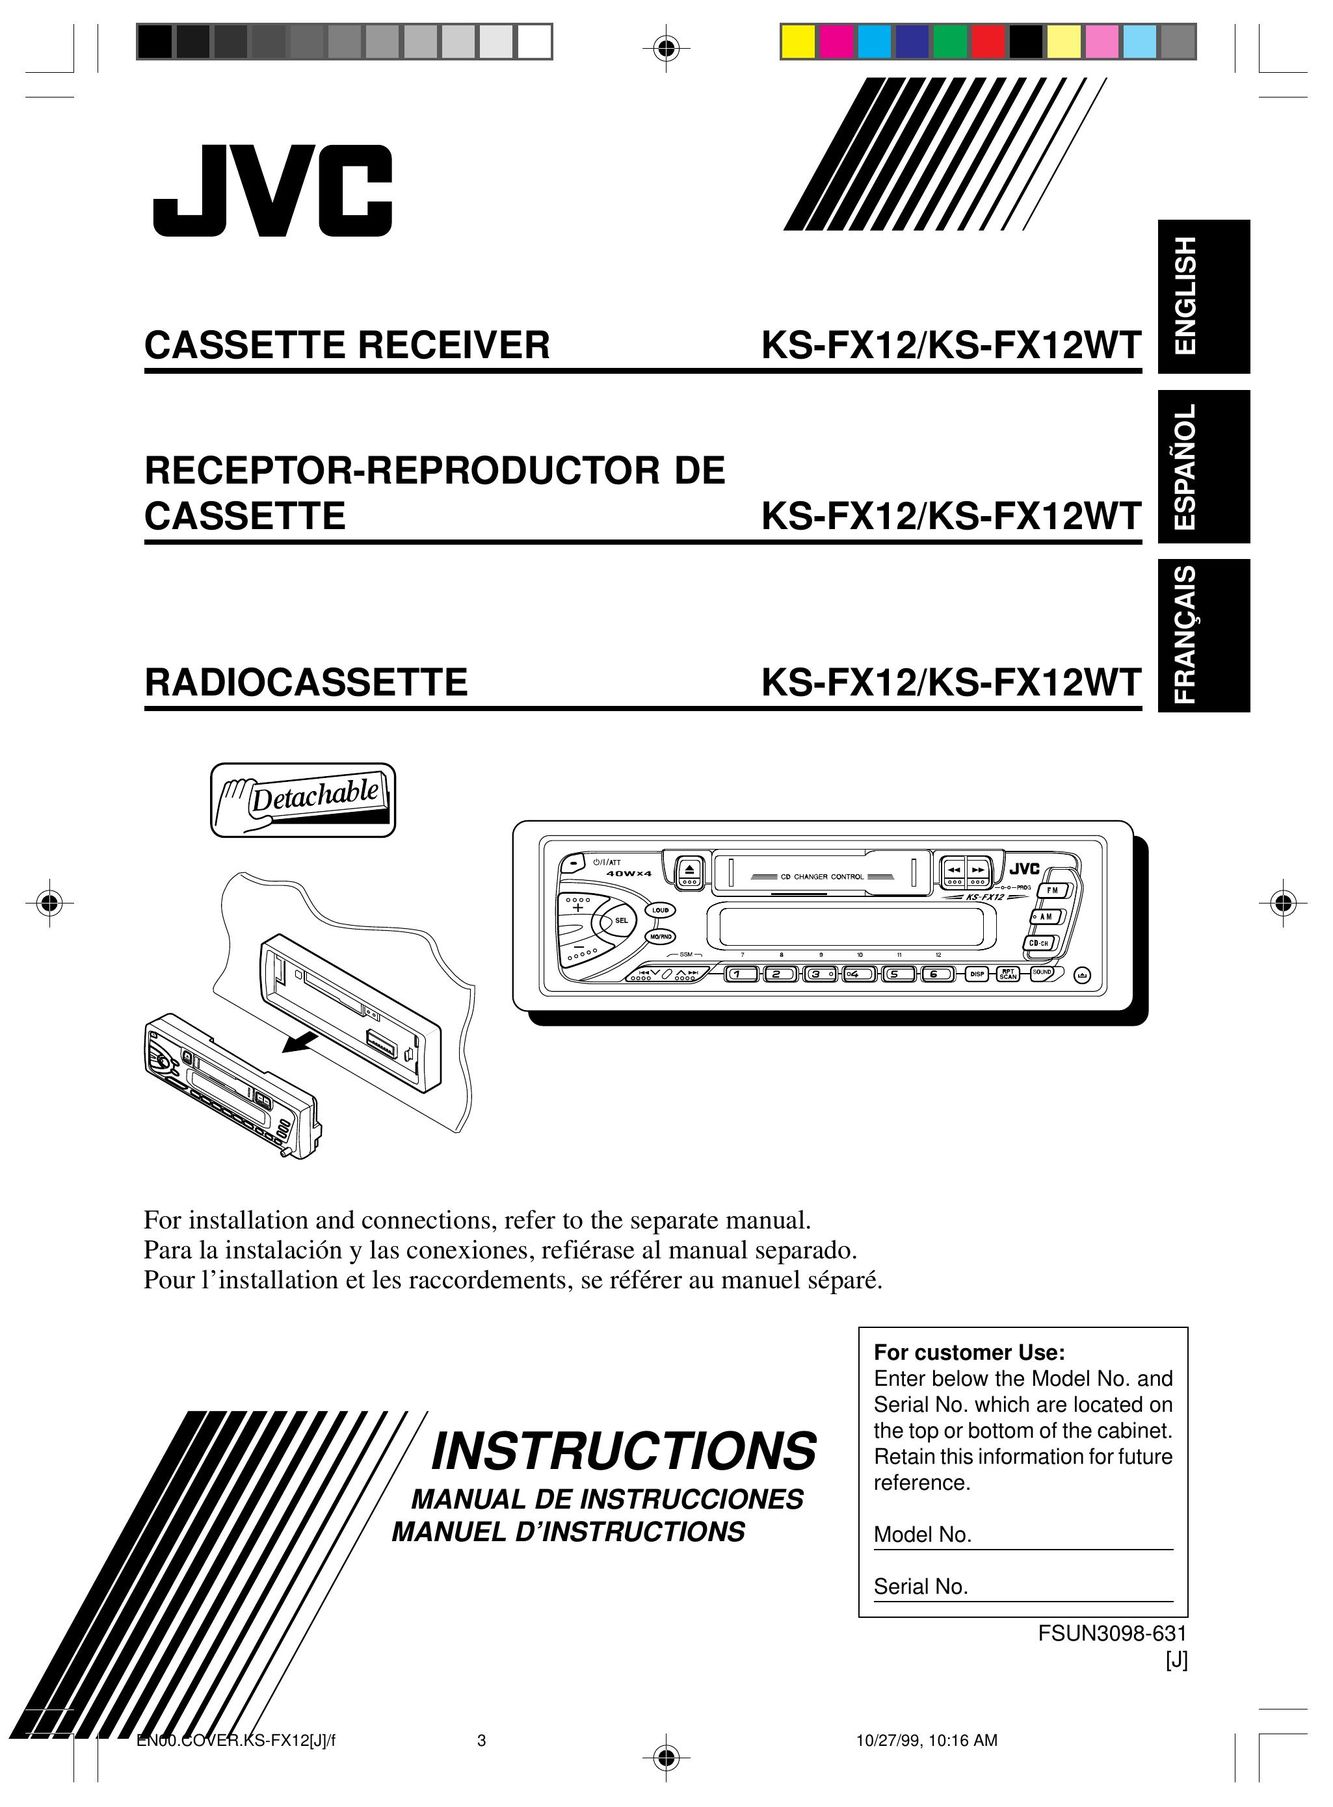 JVC KS-FX12WT Microcassette Recorder User Manual